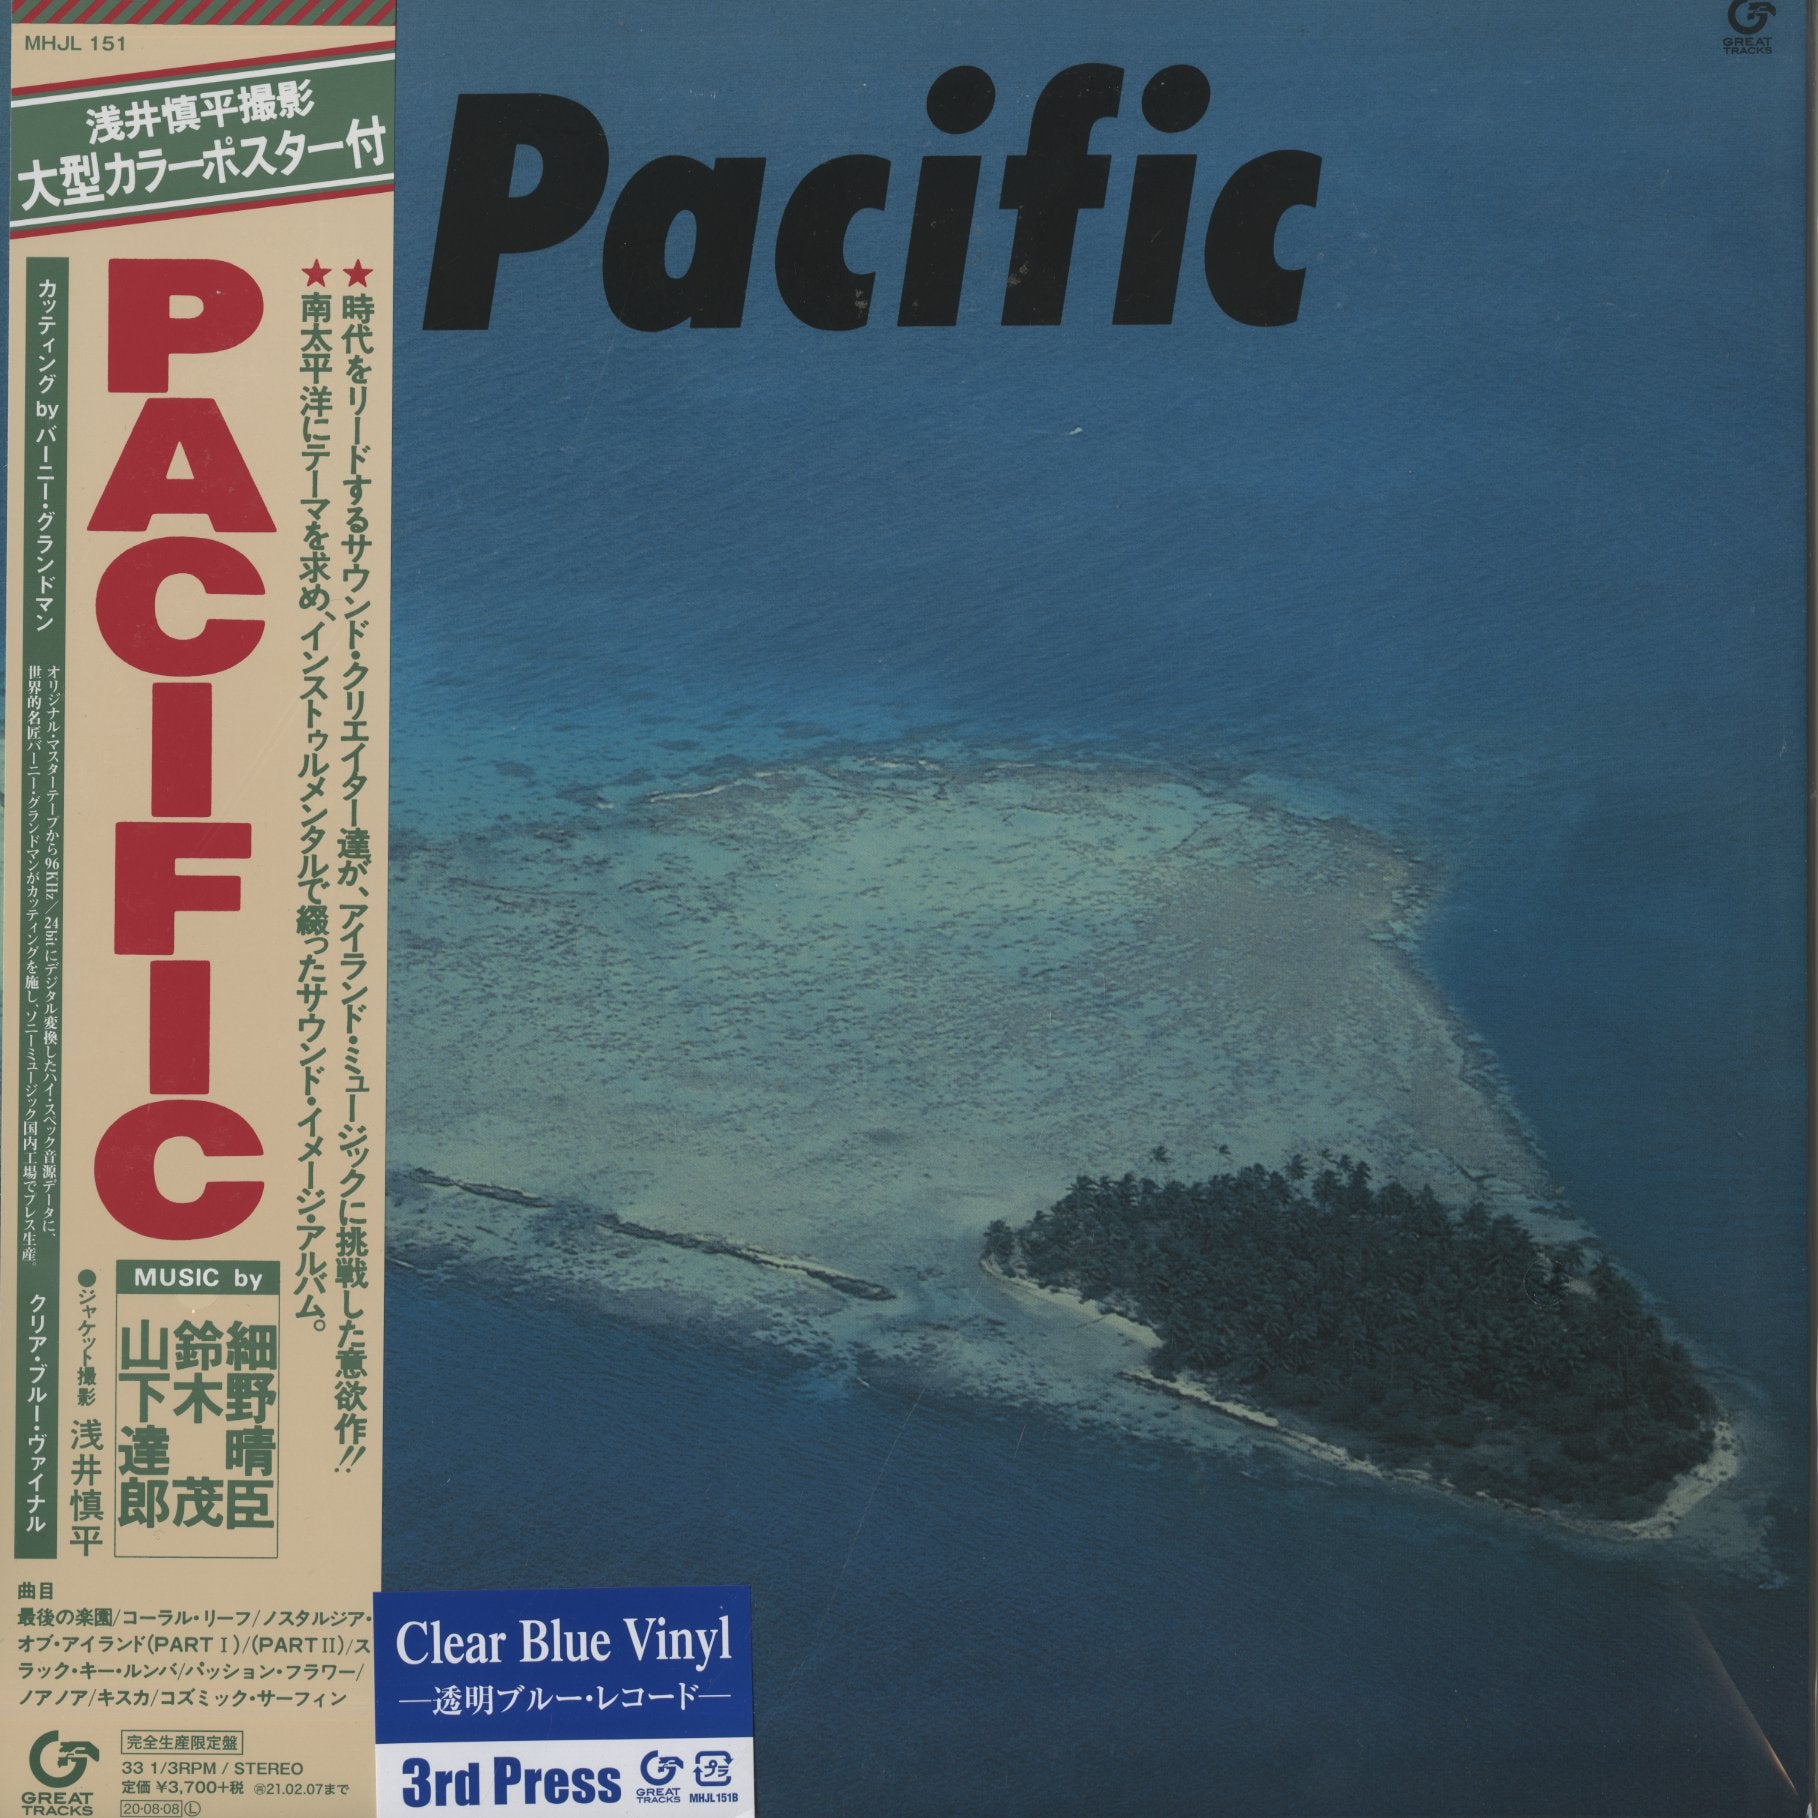 人気の新作 Pacific 『PACIFIC パシフィック レコード 山下達郎 細野 